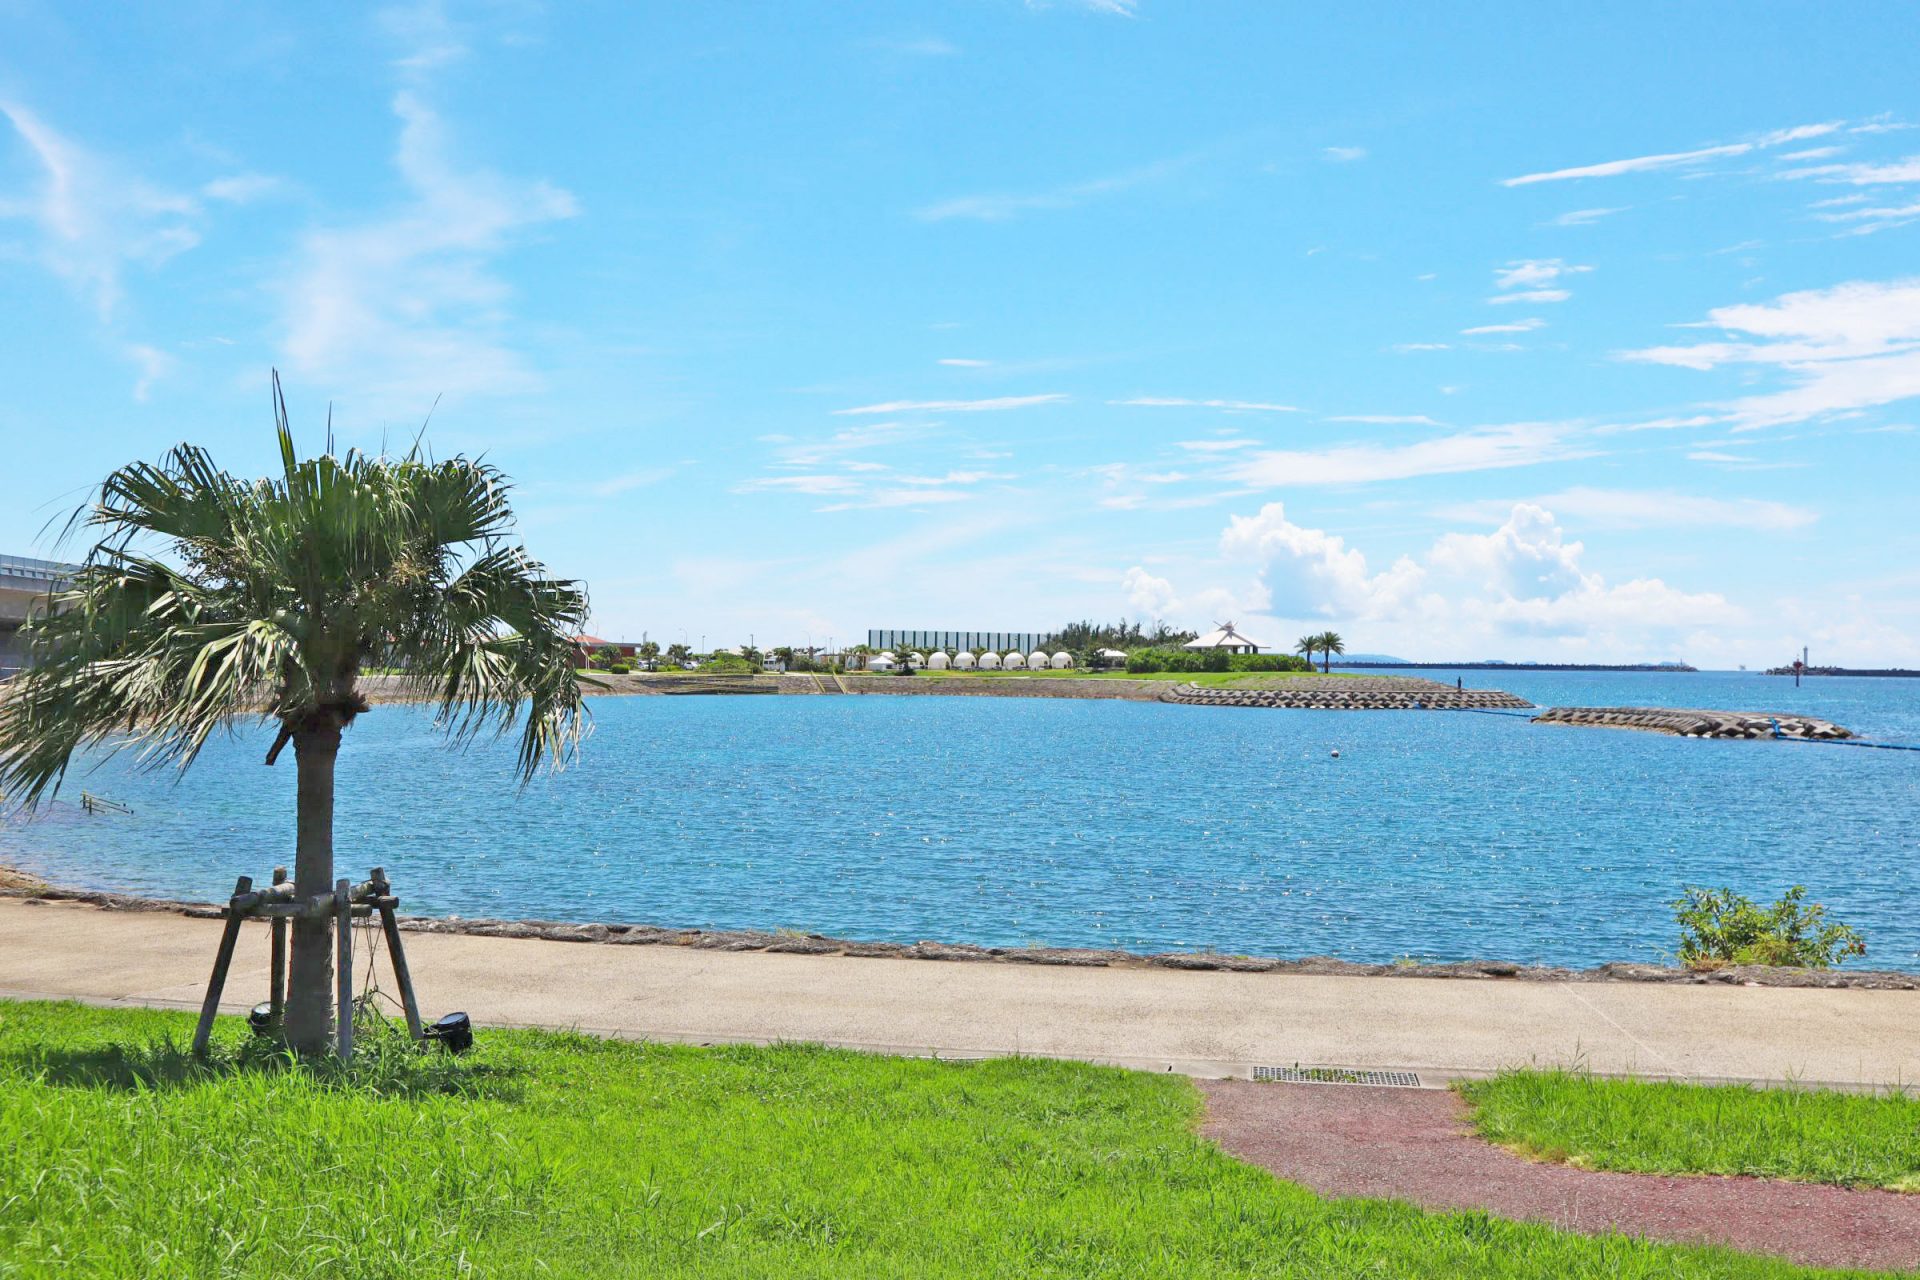 那覇市 波の上うみそら公園 にある 手ぶらでビーチパーティを堪能できる3つのスポットを紹介 沖縄の観光情報はfeel Okinawa